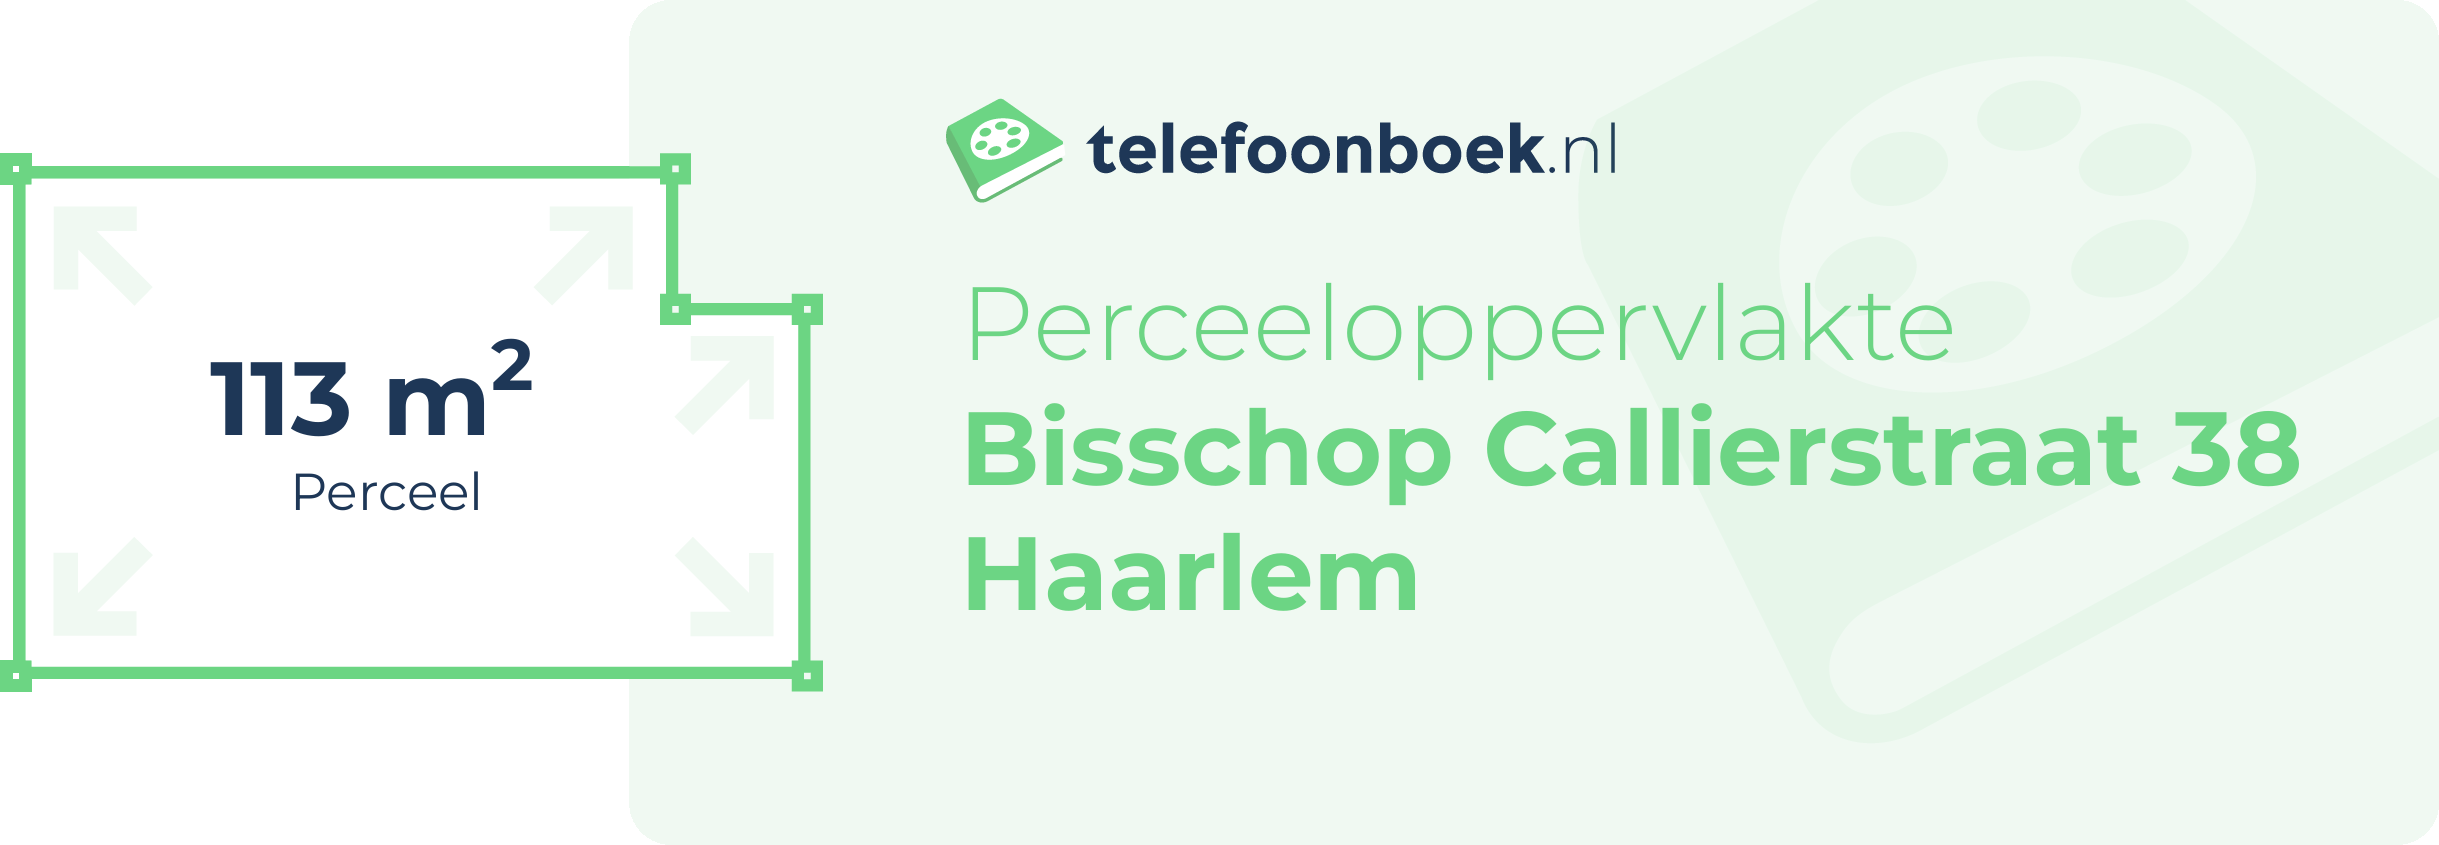 Perceeloppervlakte Bisschop Callierstraat 38 Haarlem